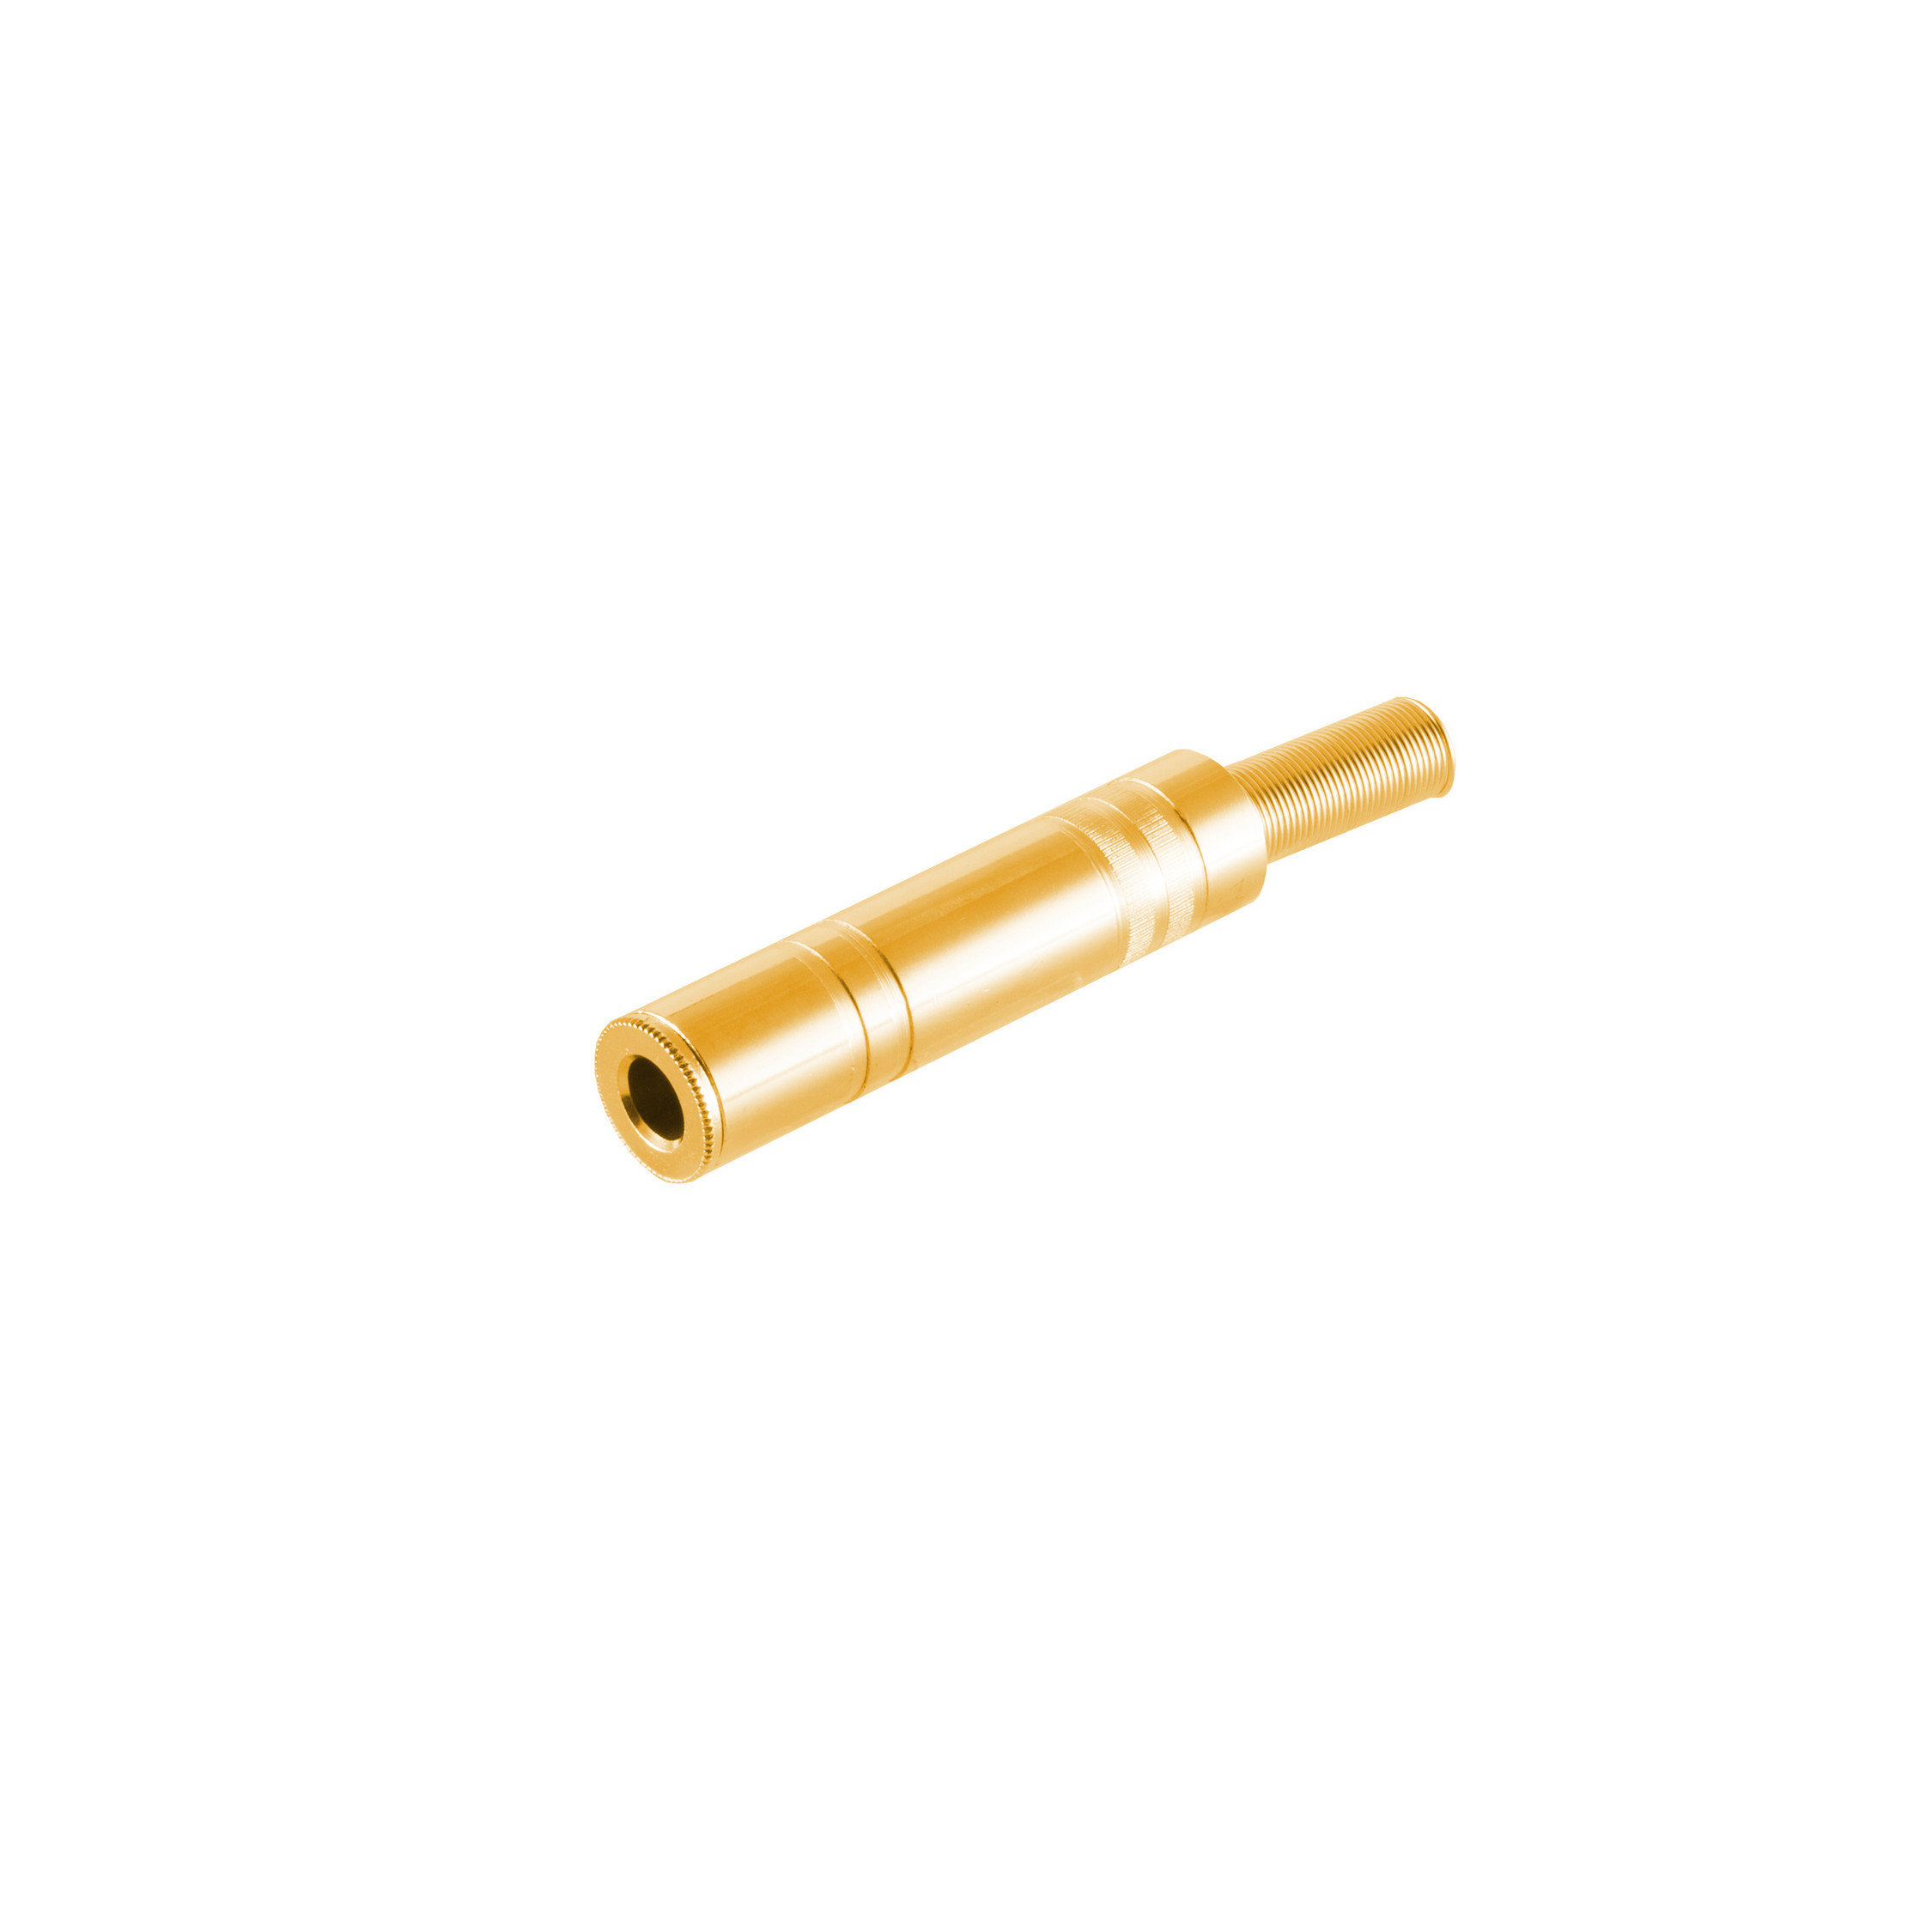 S/CONN MAXIMUM CONNECTIVITY Klinkenkupplung Stereo Klinke Metall, 6,3mm, vergoldet